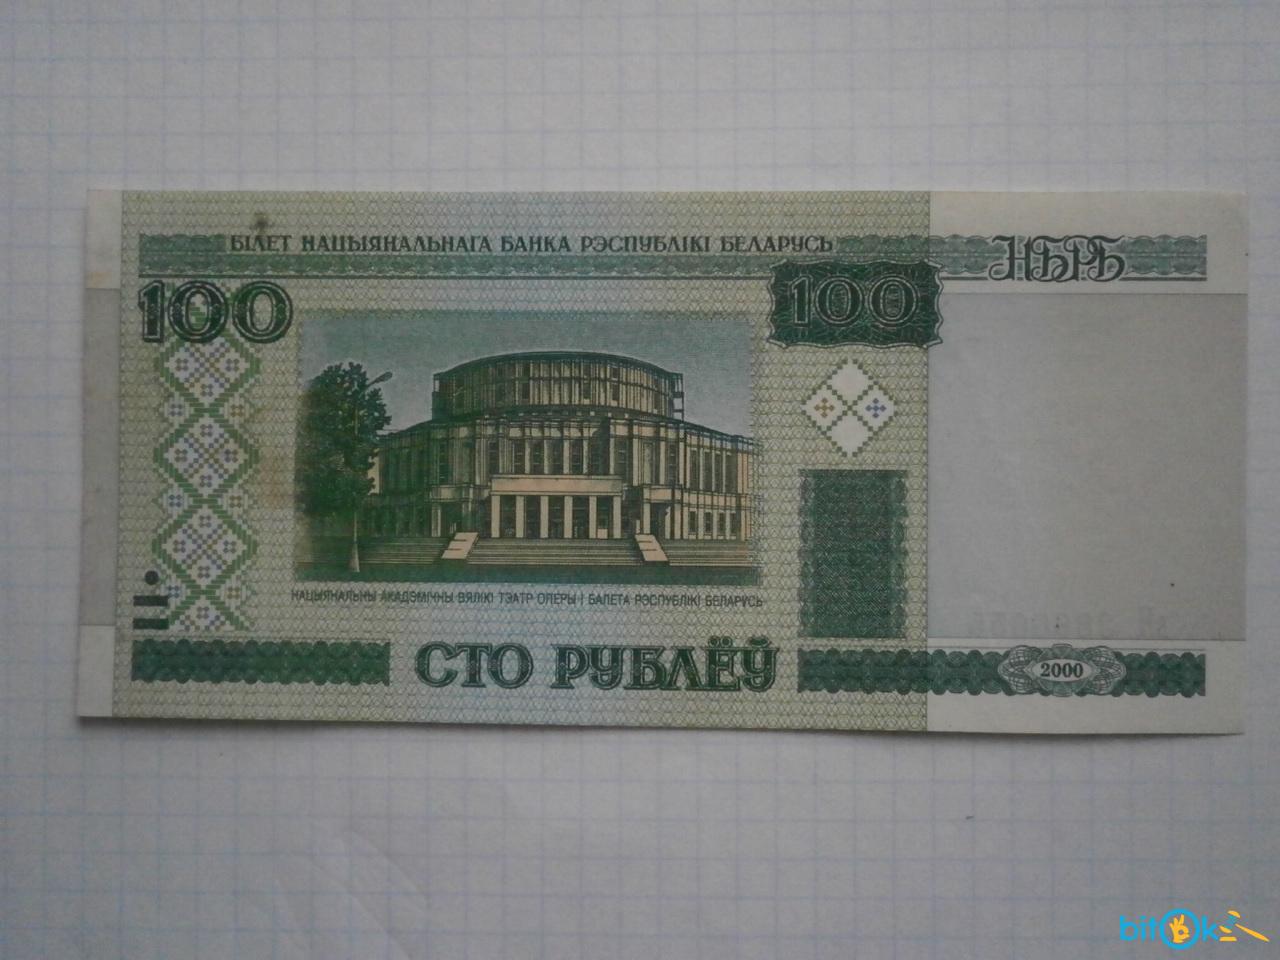 Сколько стоят белорусские рубли 2000. 100 Белорусских рублей 2000. 100 Рублей 2000. Белорусская купюра 100 рублей 2000 года. 100 Белорусских рублей 2000 года.